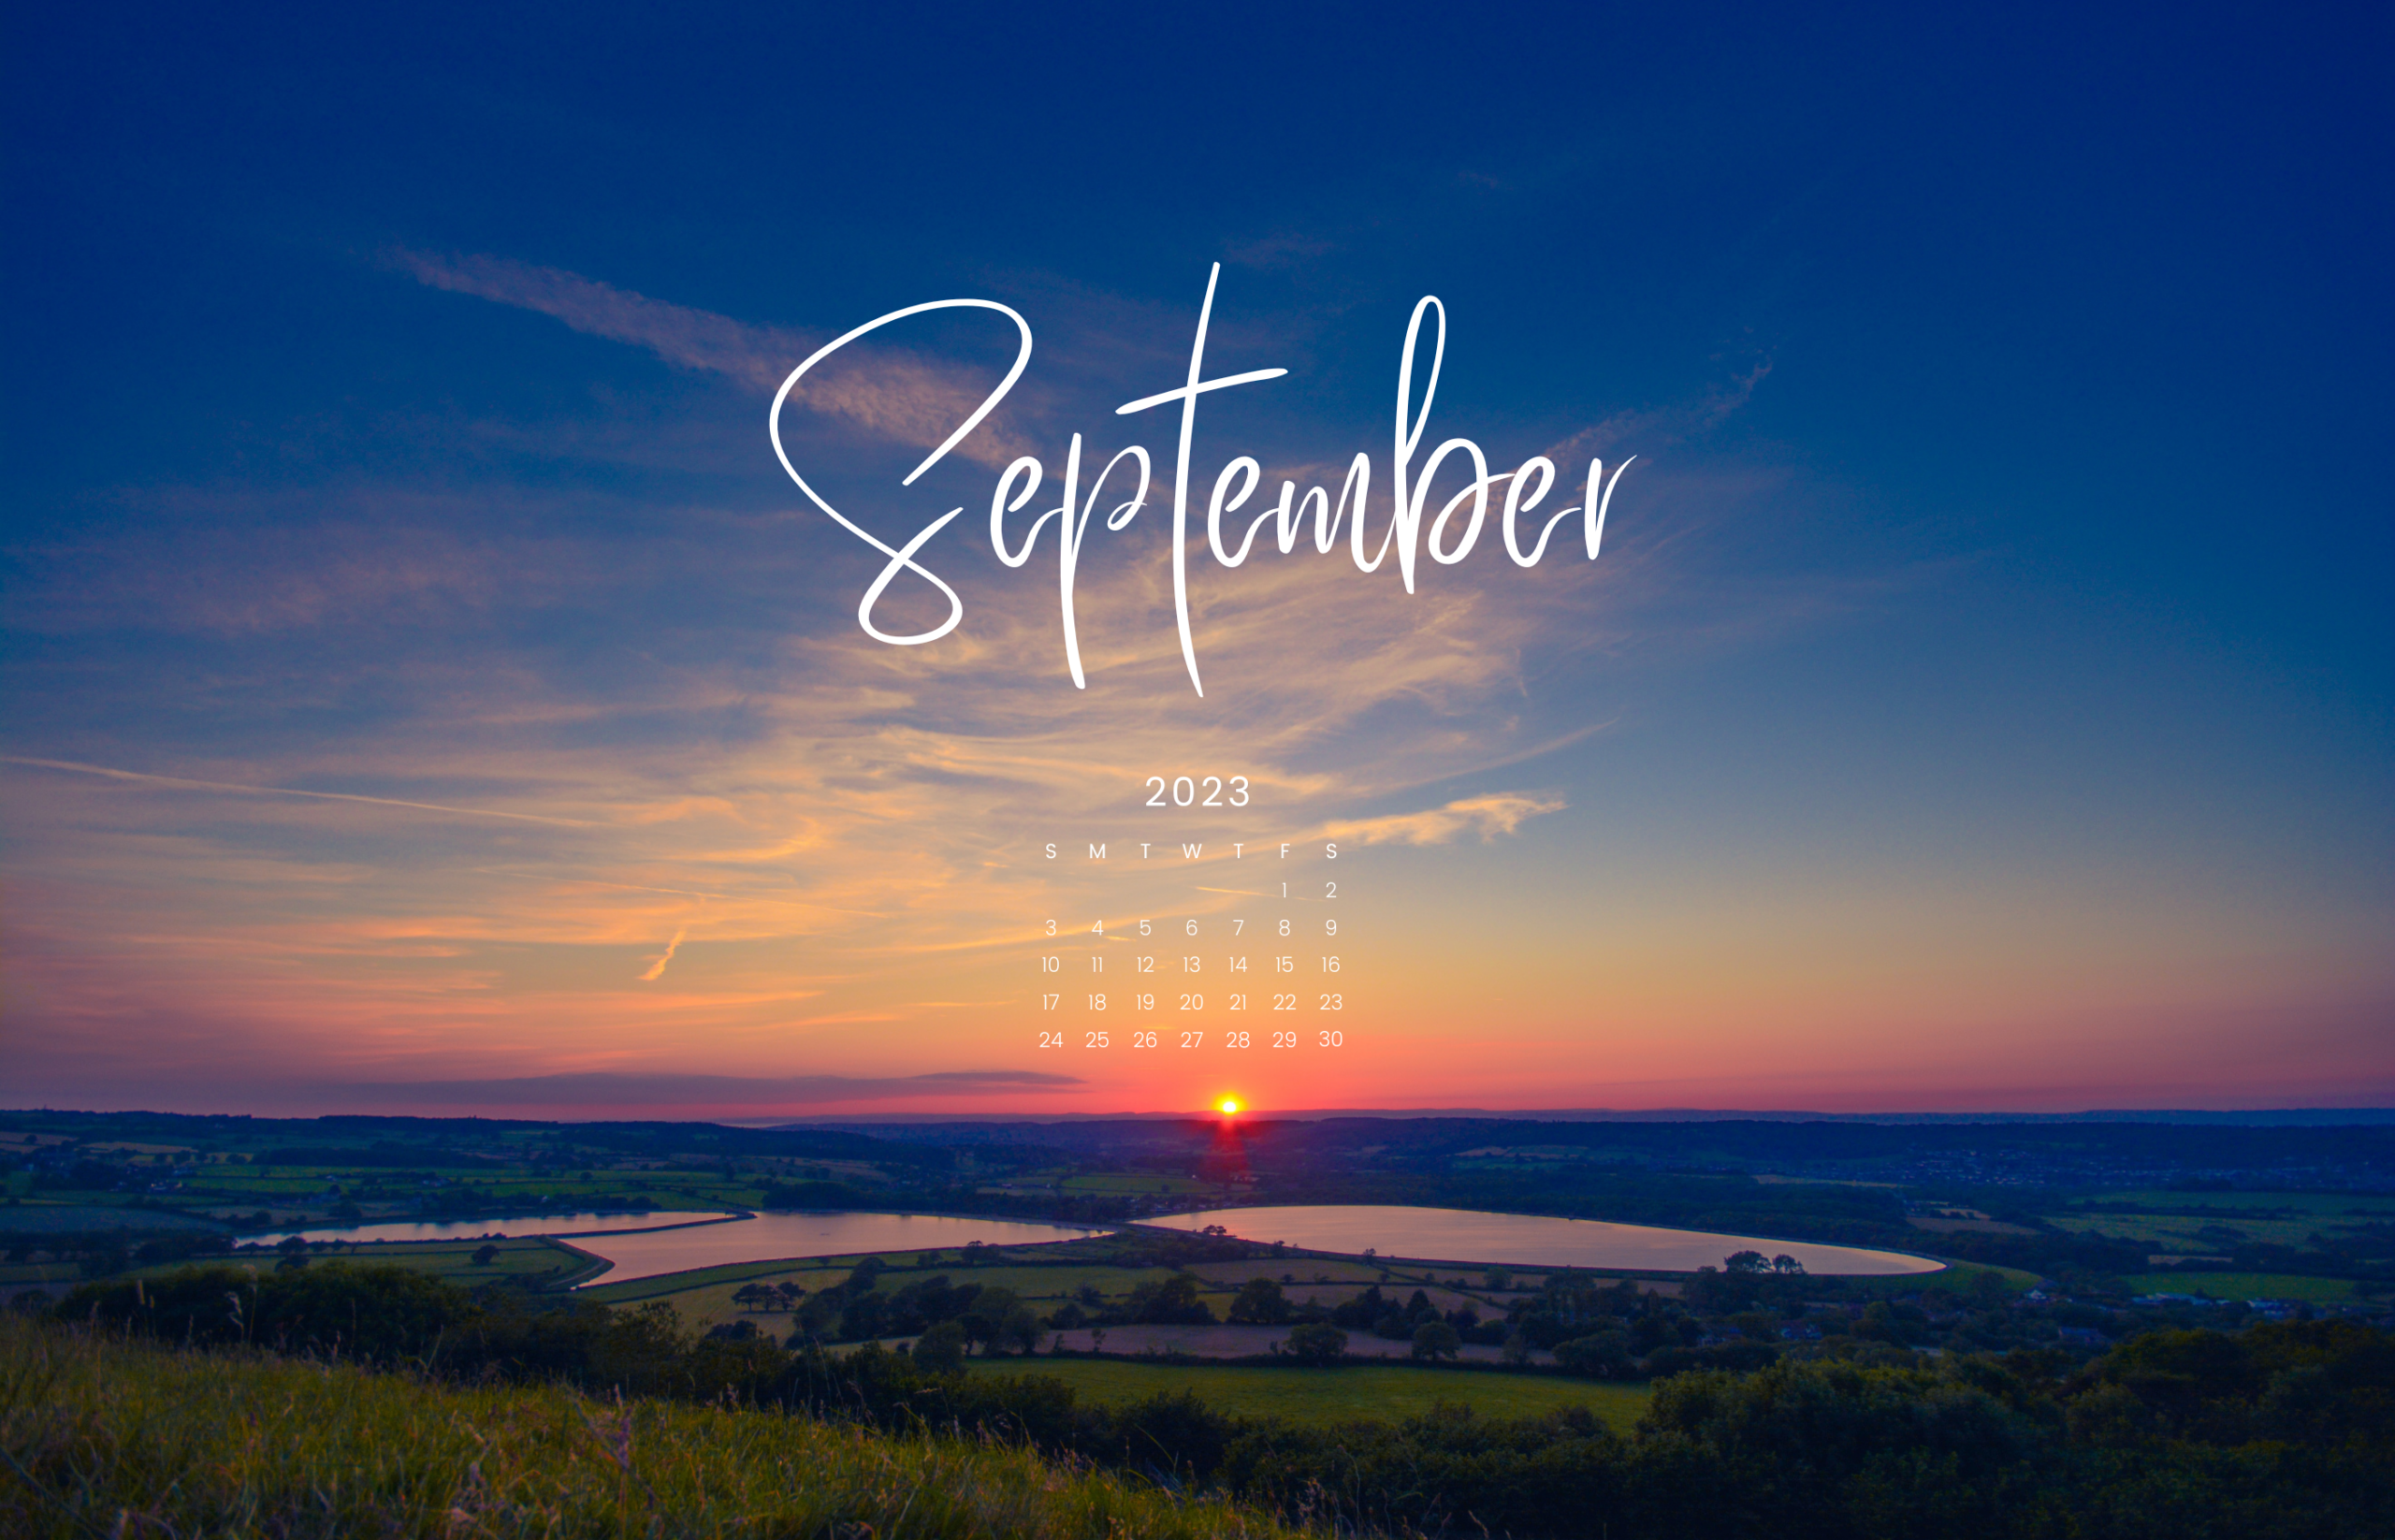 Free September 2019 wallpaper calendars  Flipsnack Blog